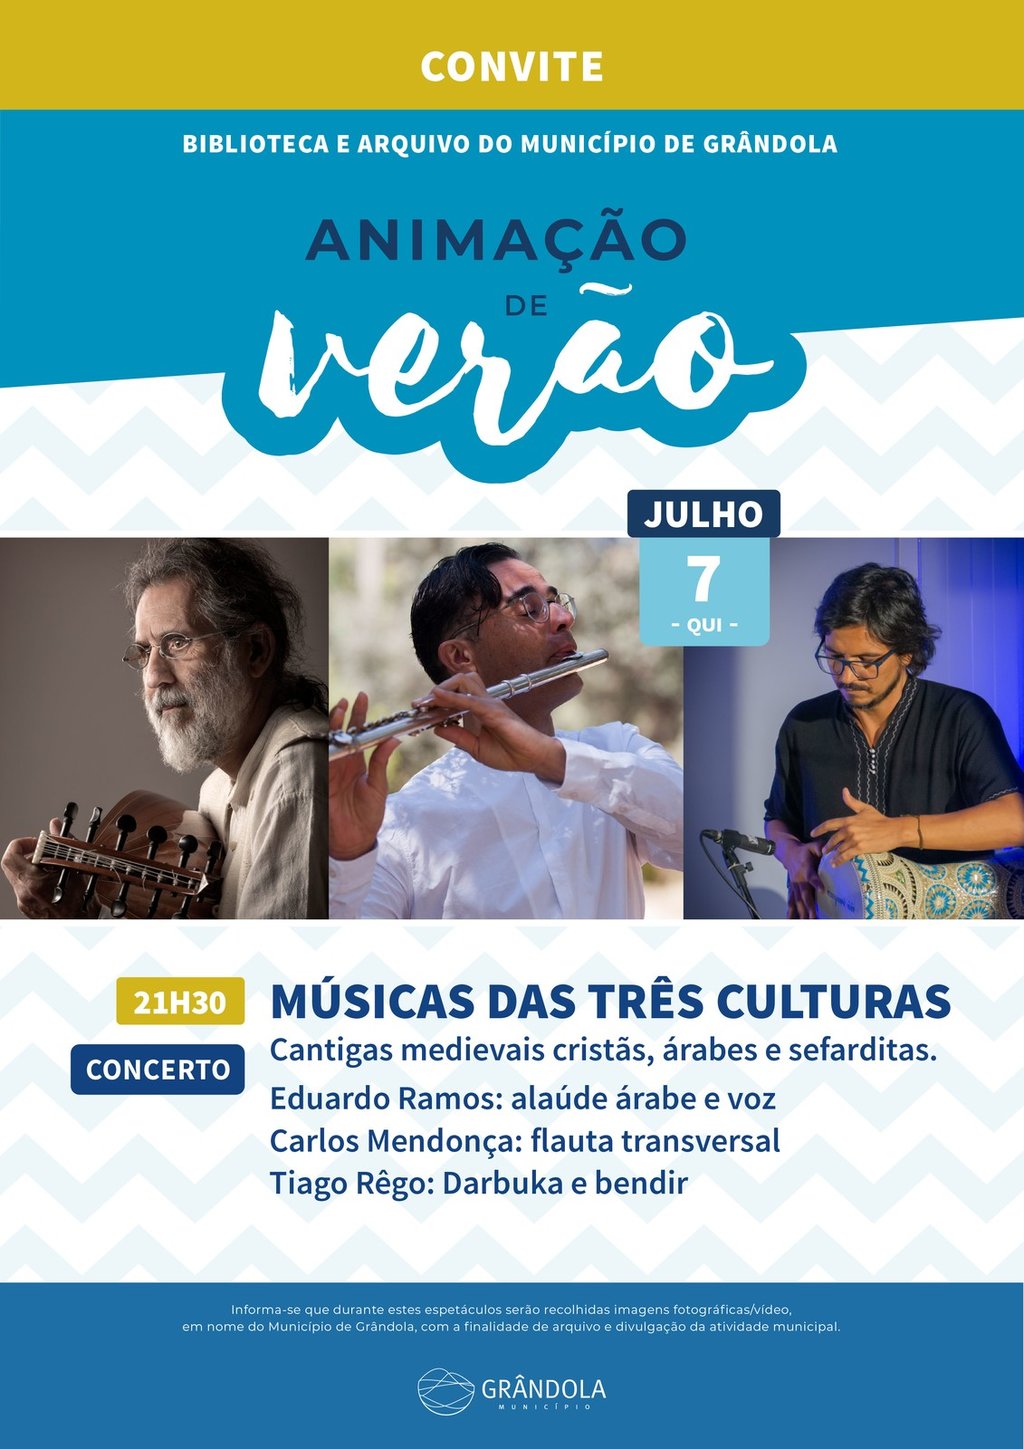 VERÃO | Animação de verão » Concerto - Música das três culturas » Biblioteca e Arquivo do Município 